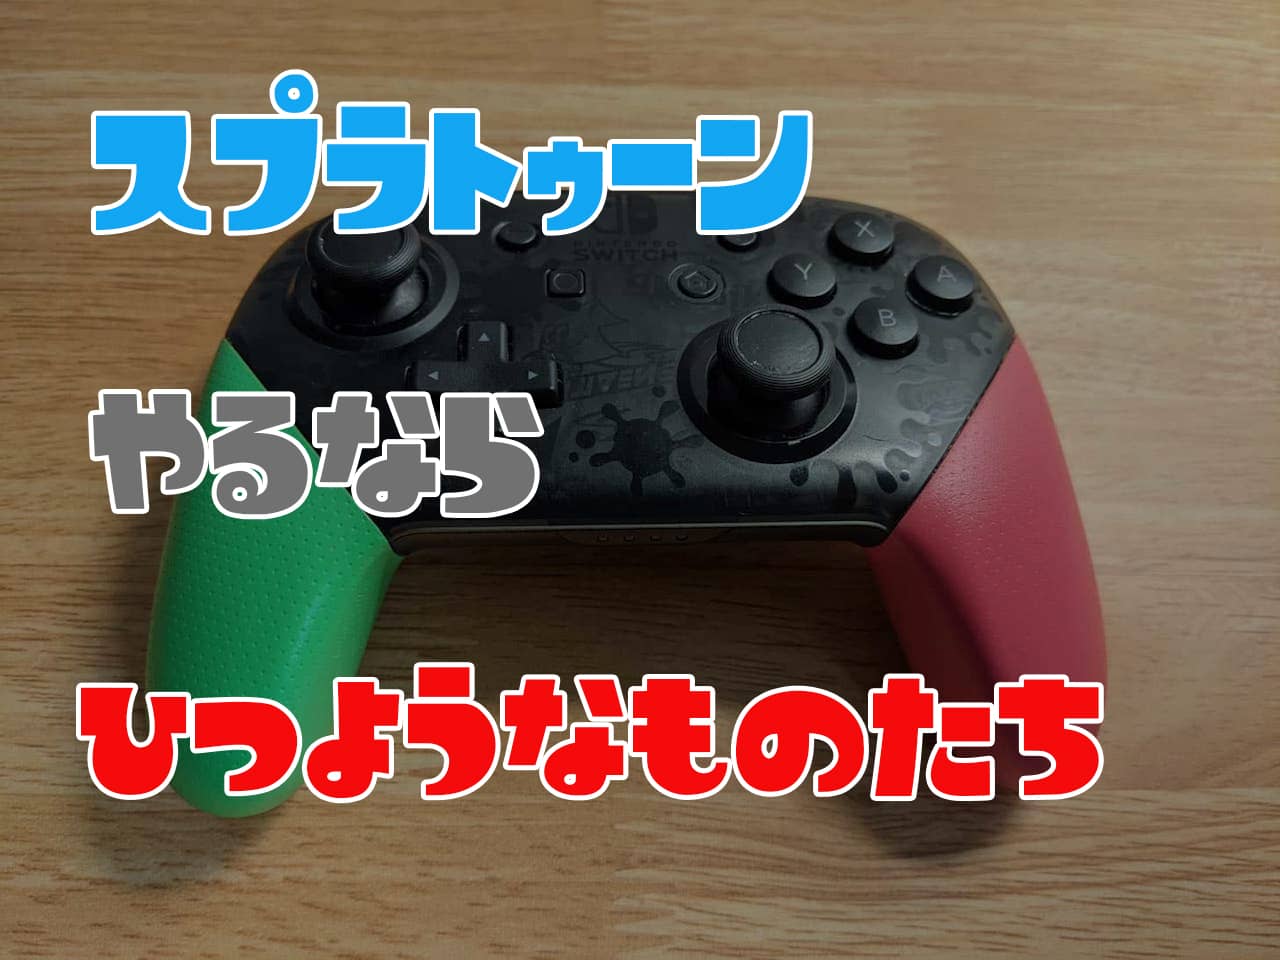 任天堂純正品】Pro コントローラー Nintendo Switch スプラトゥーン3 